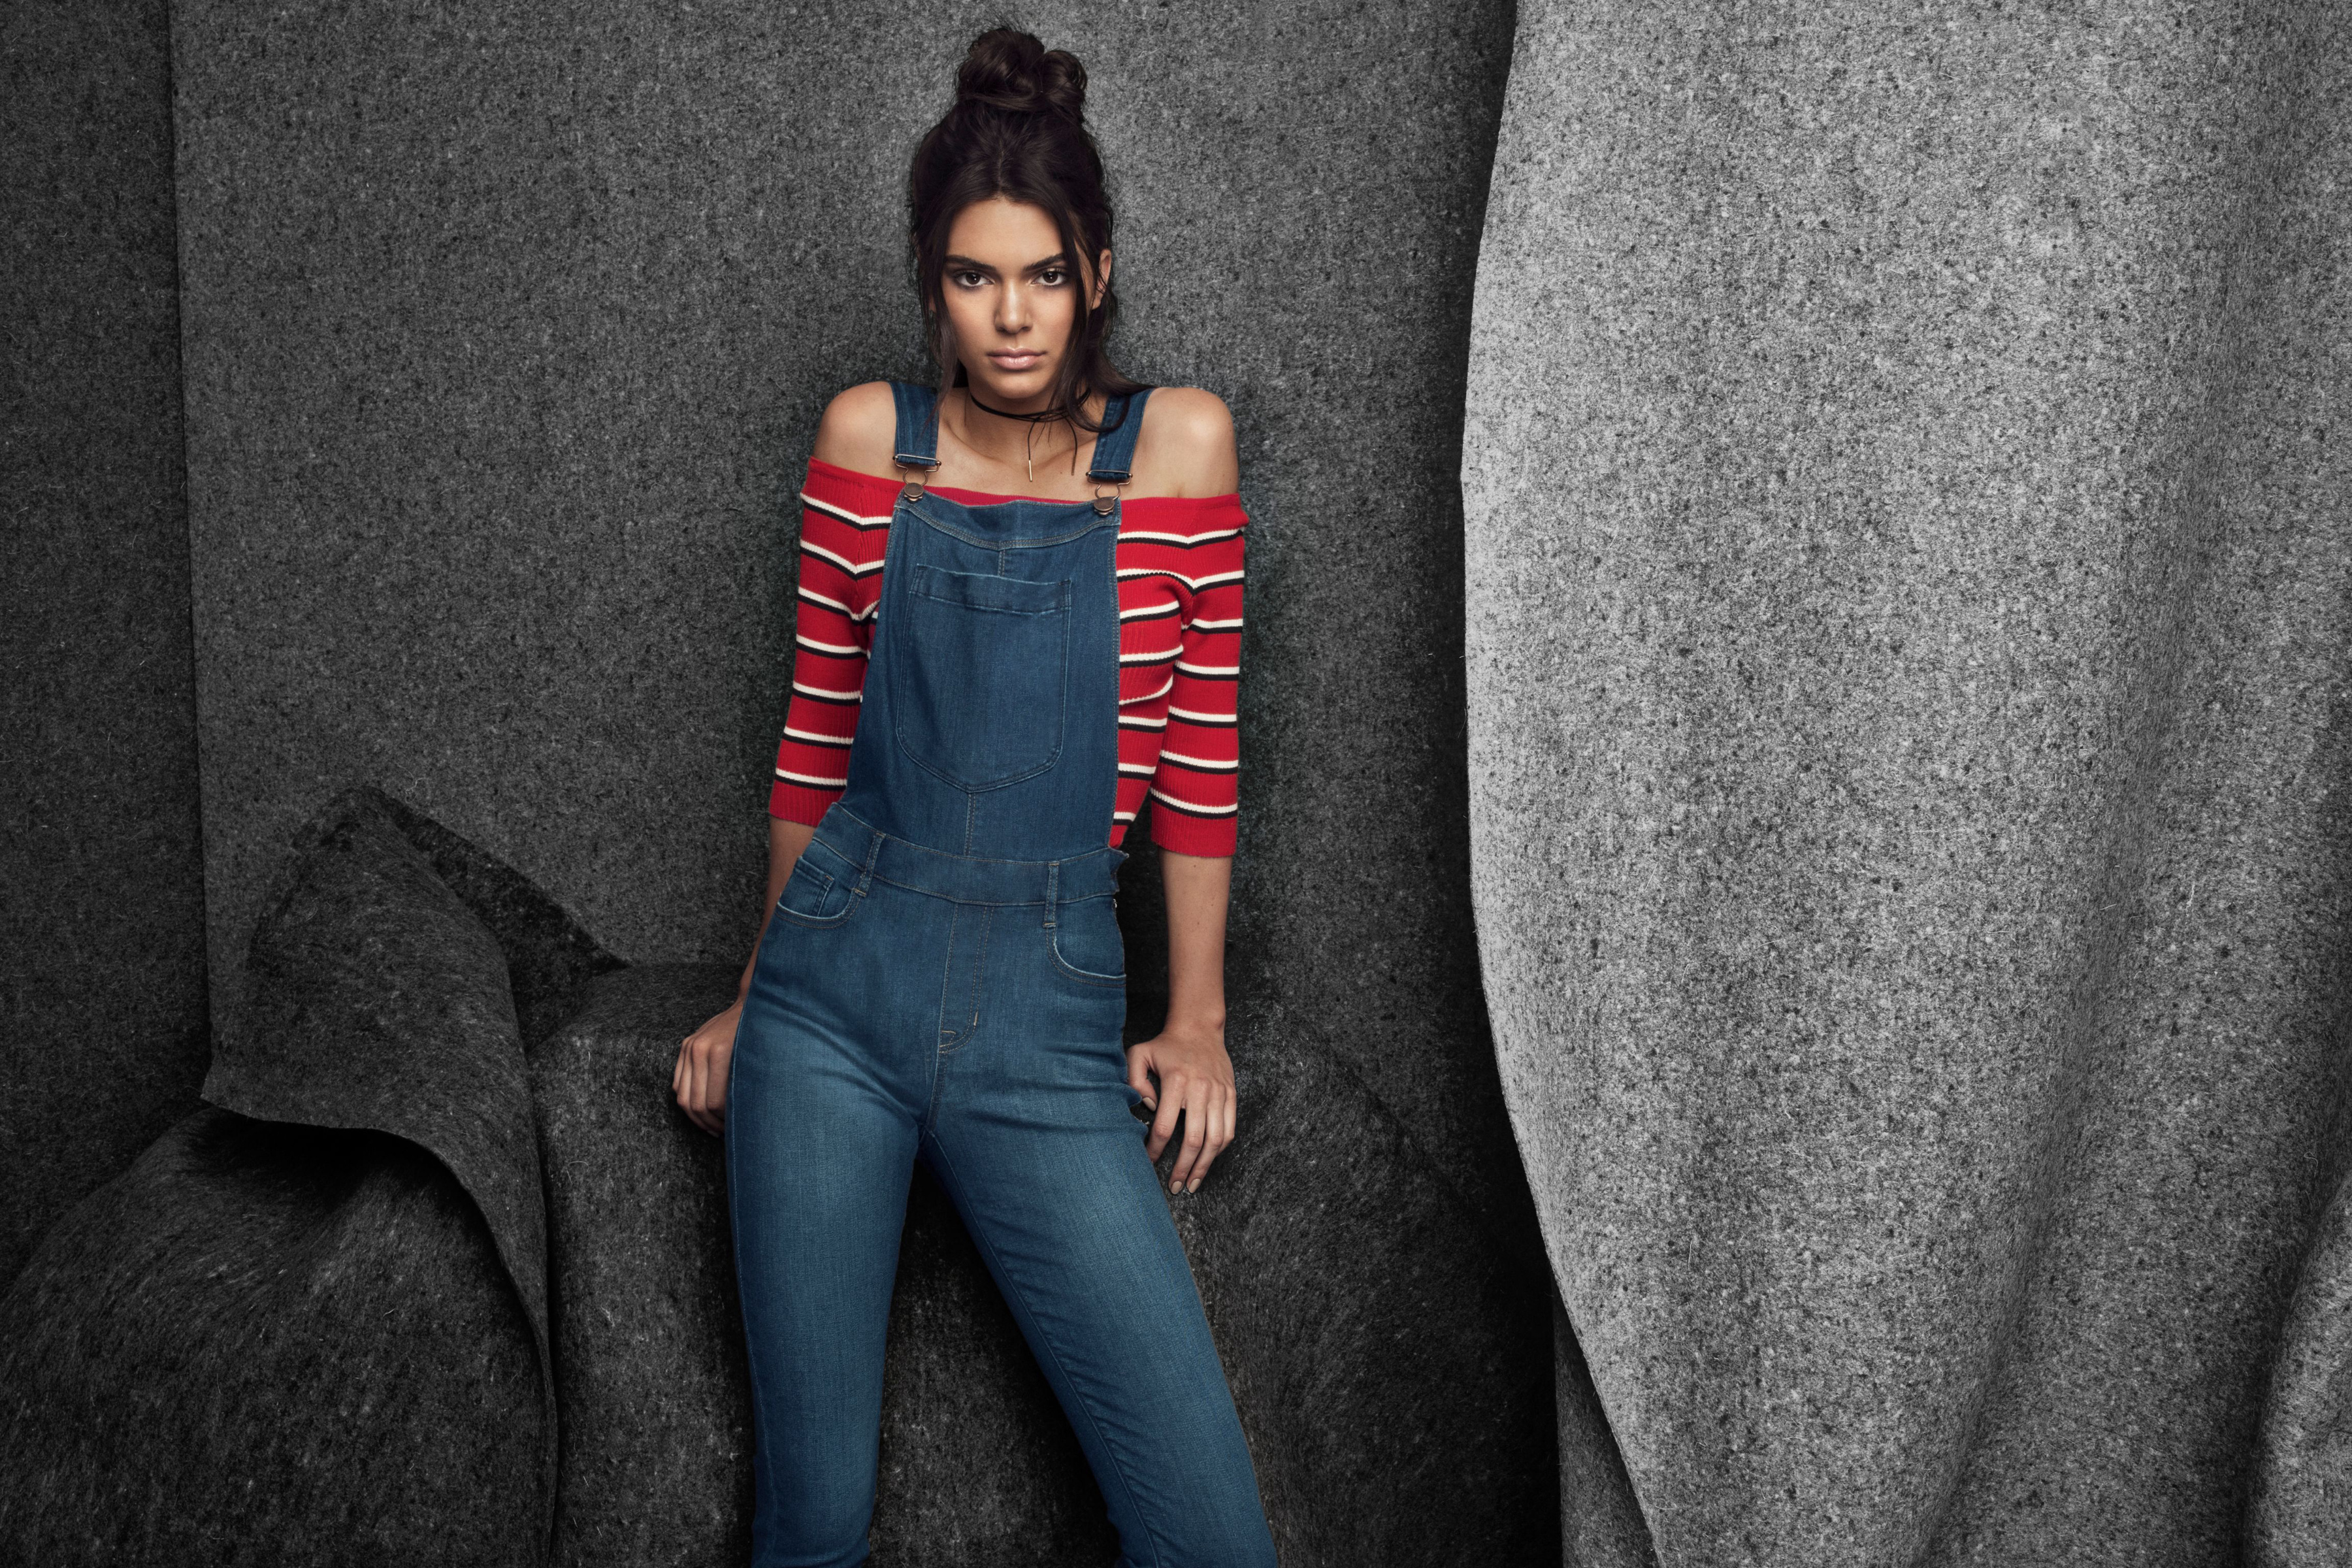 Kendall Jenner Women Brunette Overalls Model Striped Tops Jeans Hairbun 3600x2400